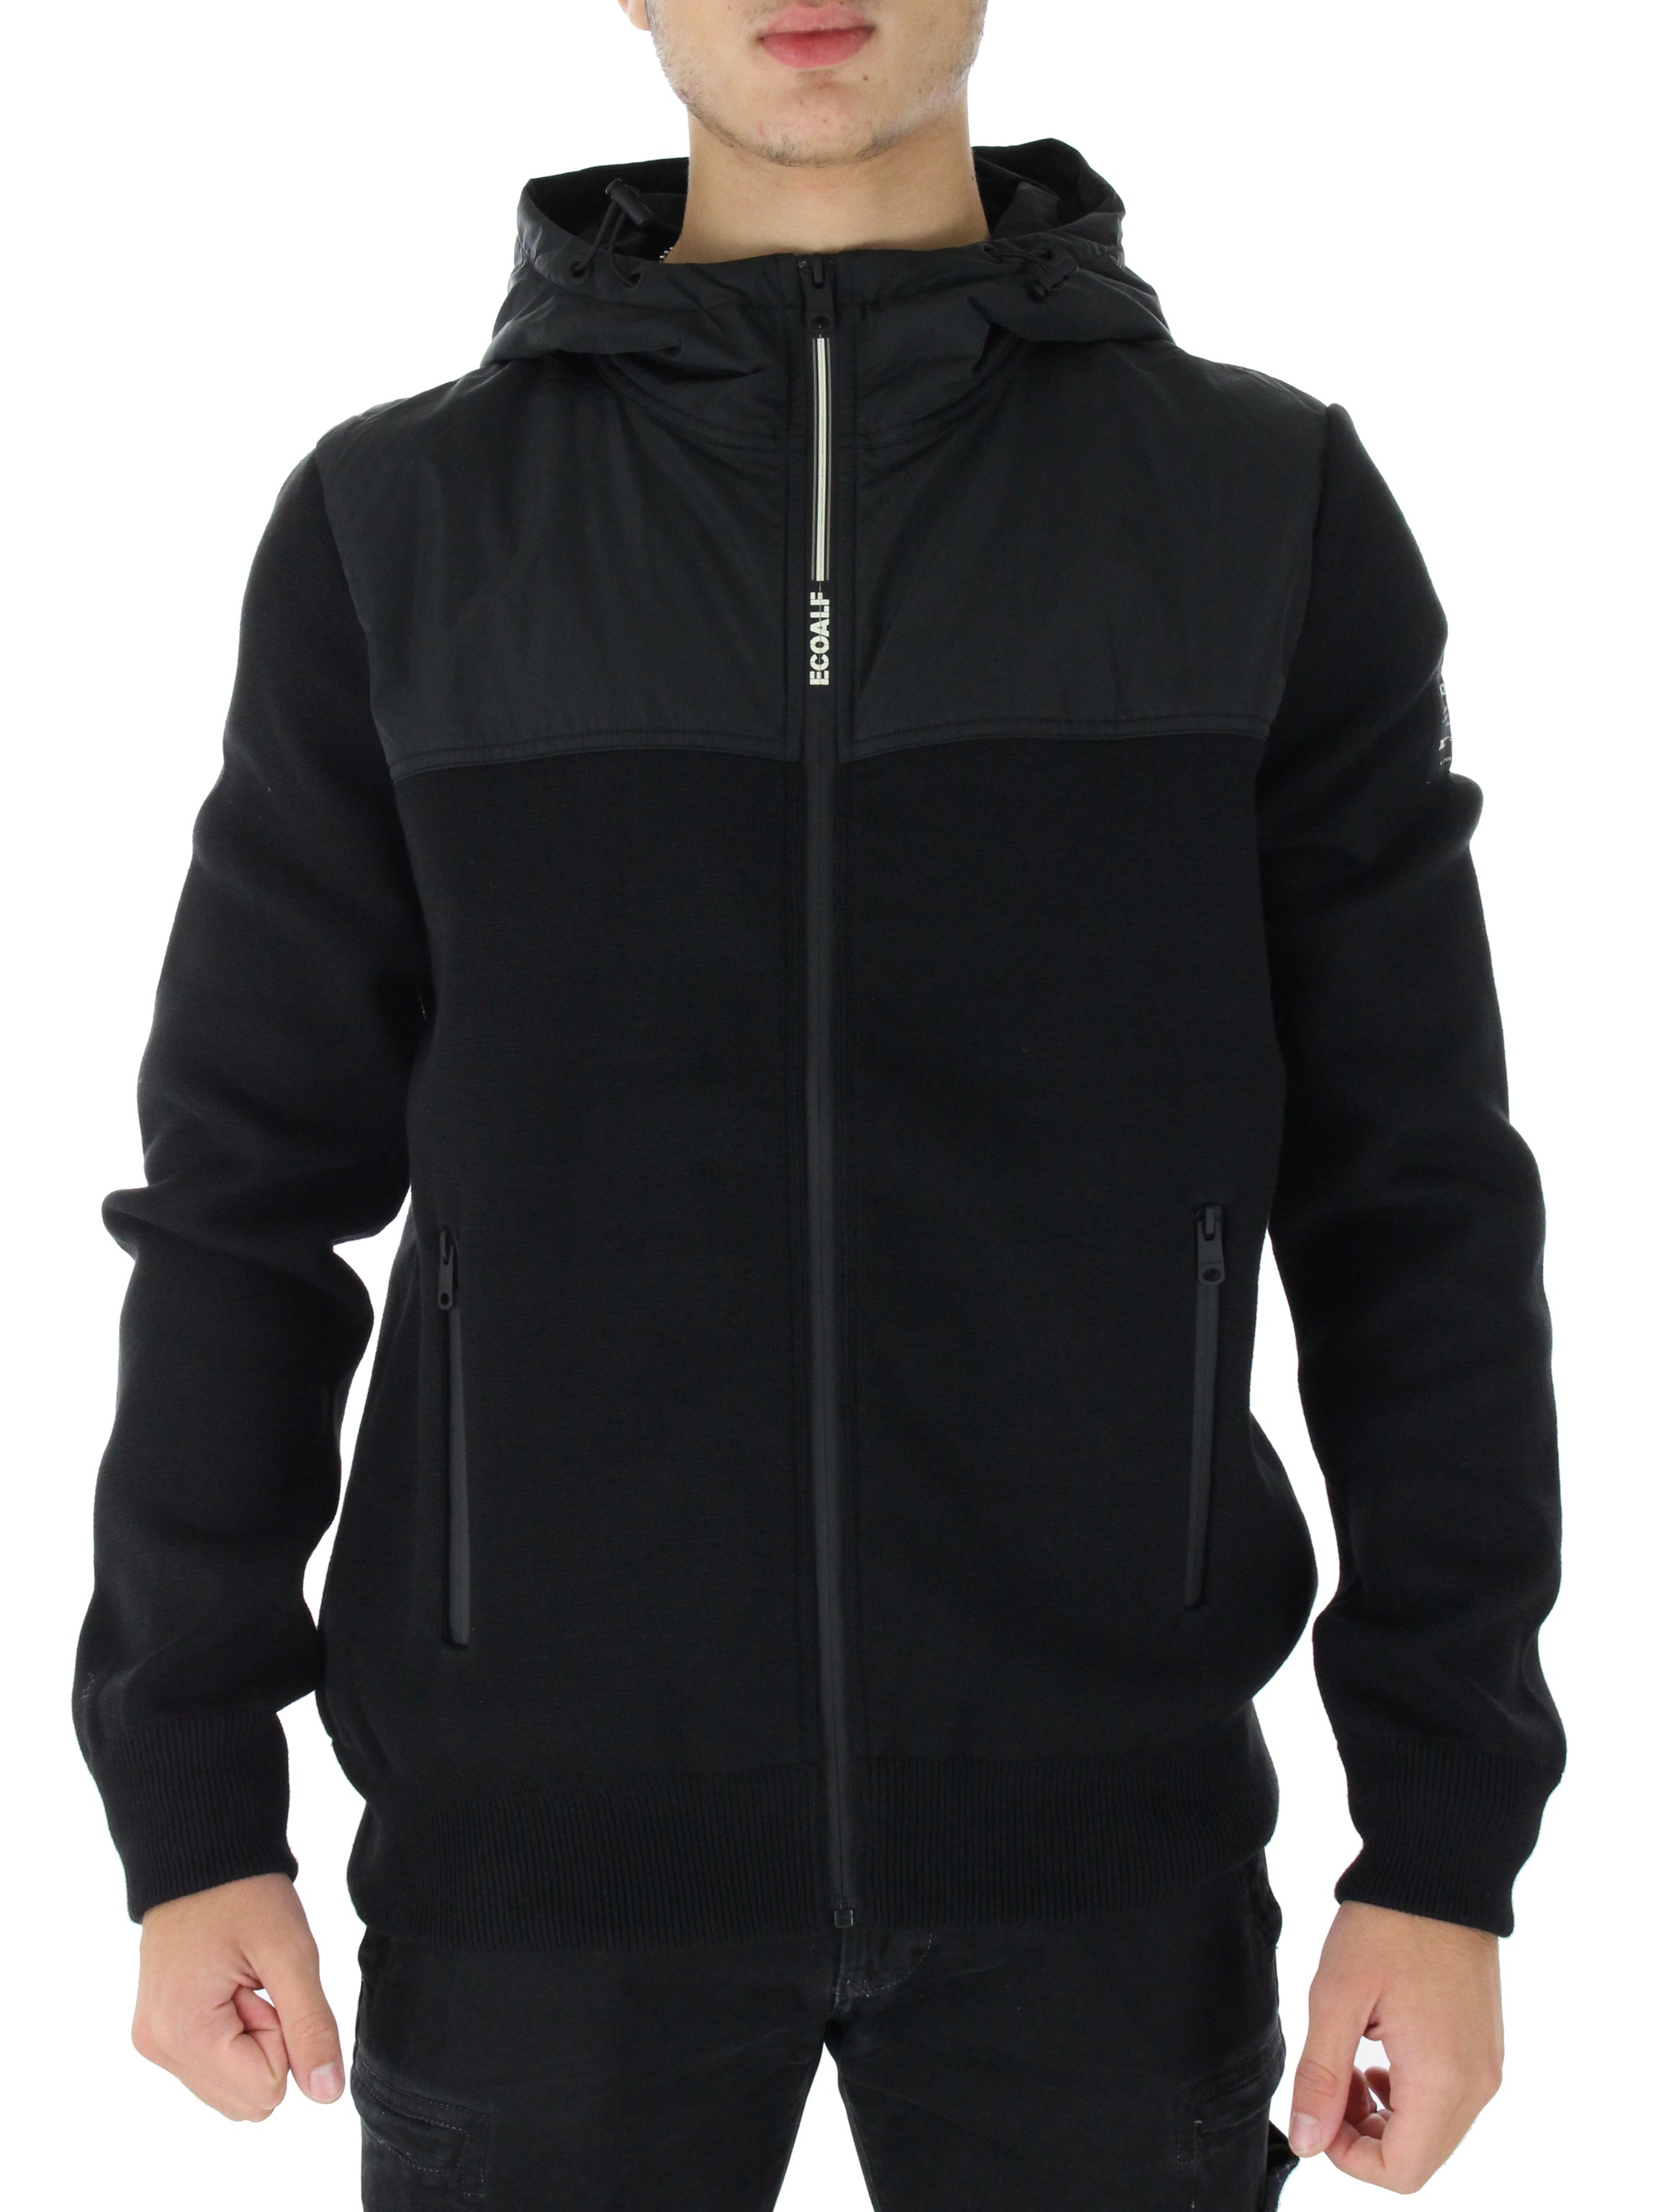 Chelsea hooded sweatshirt Gaknchels243 black